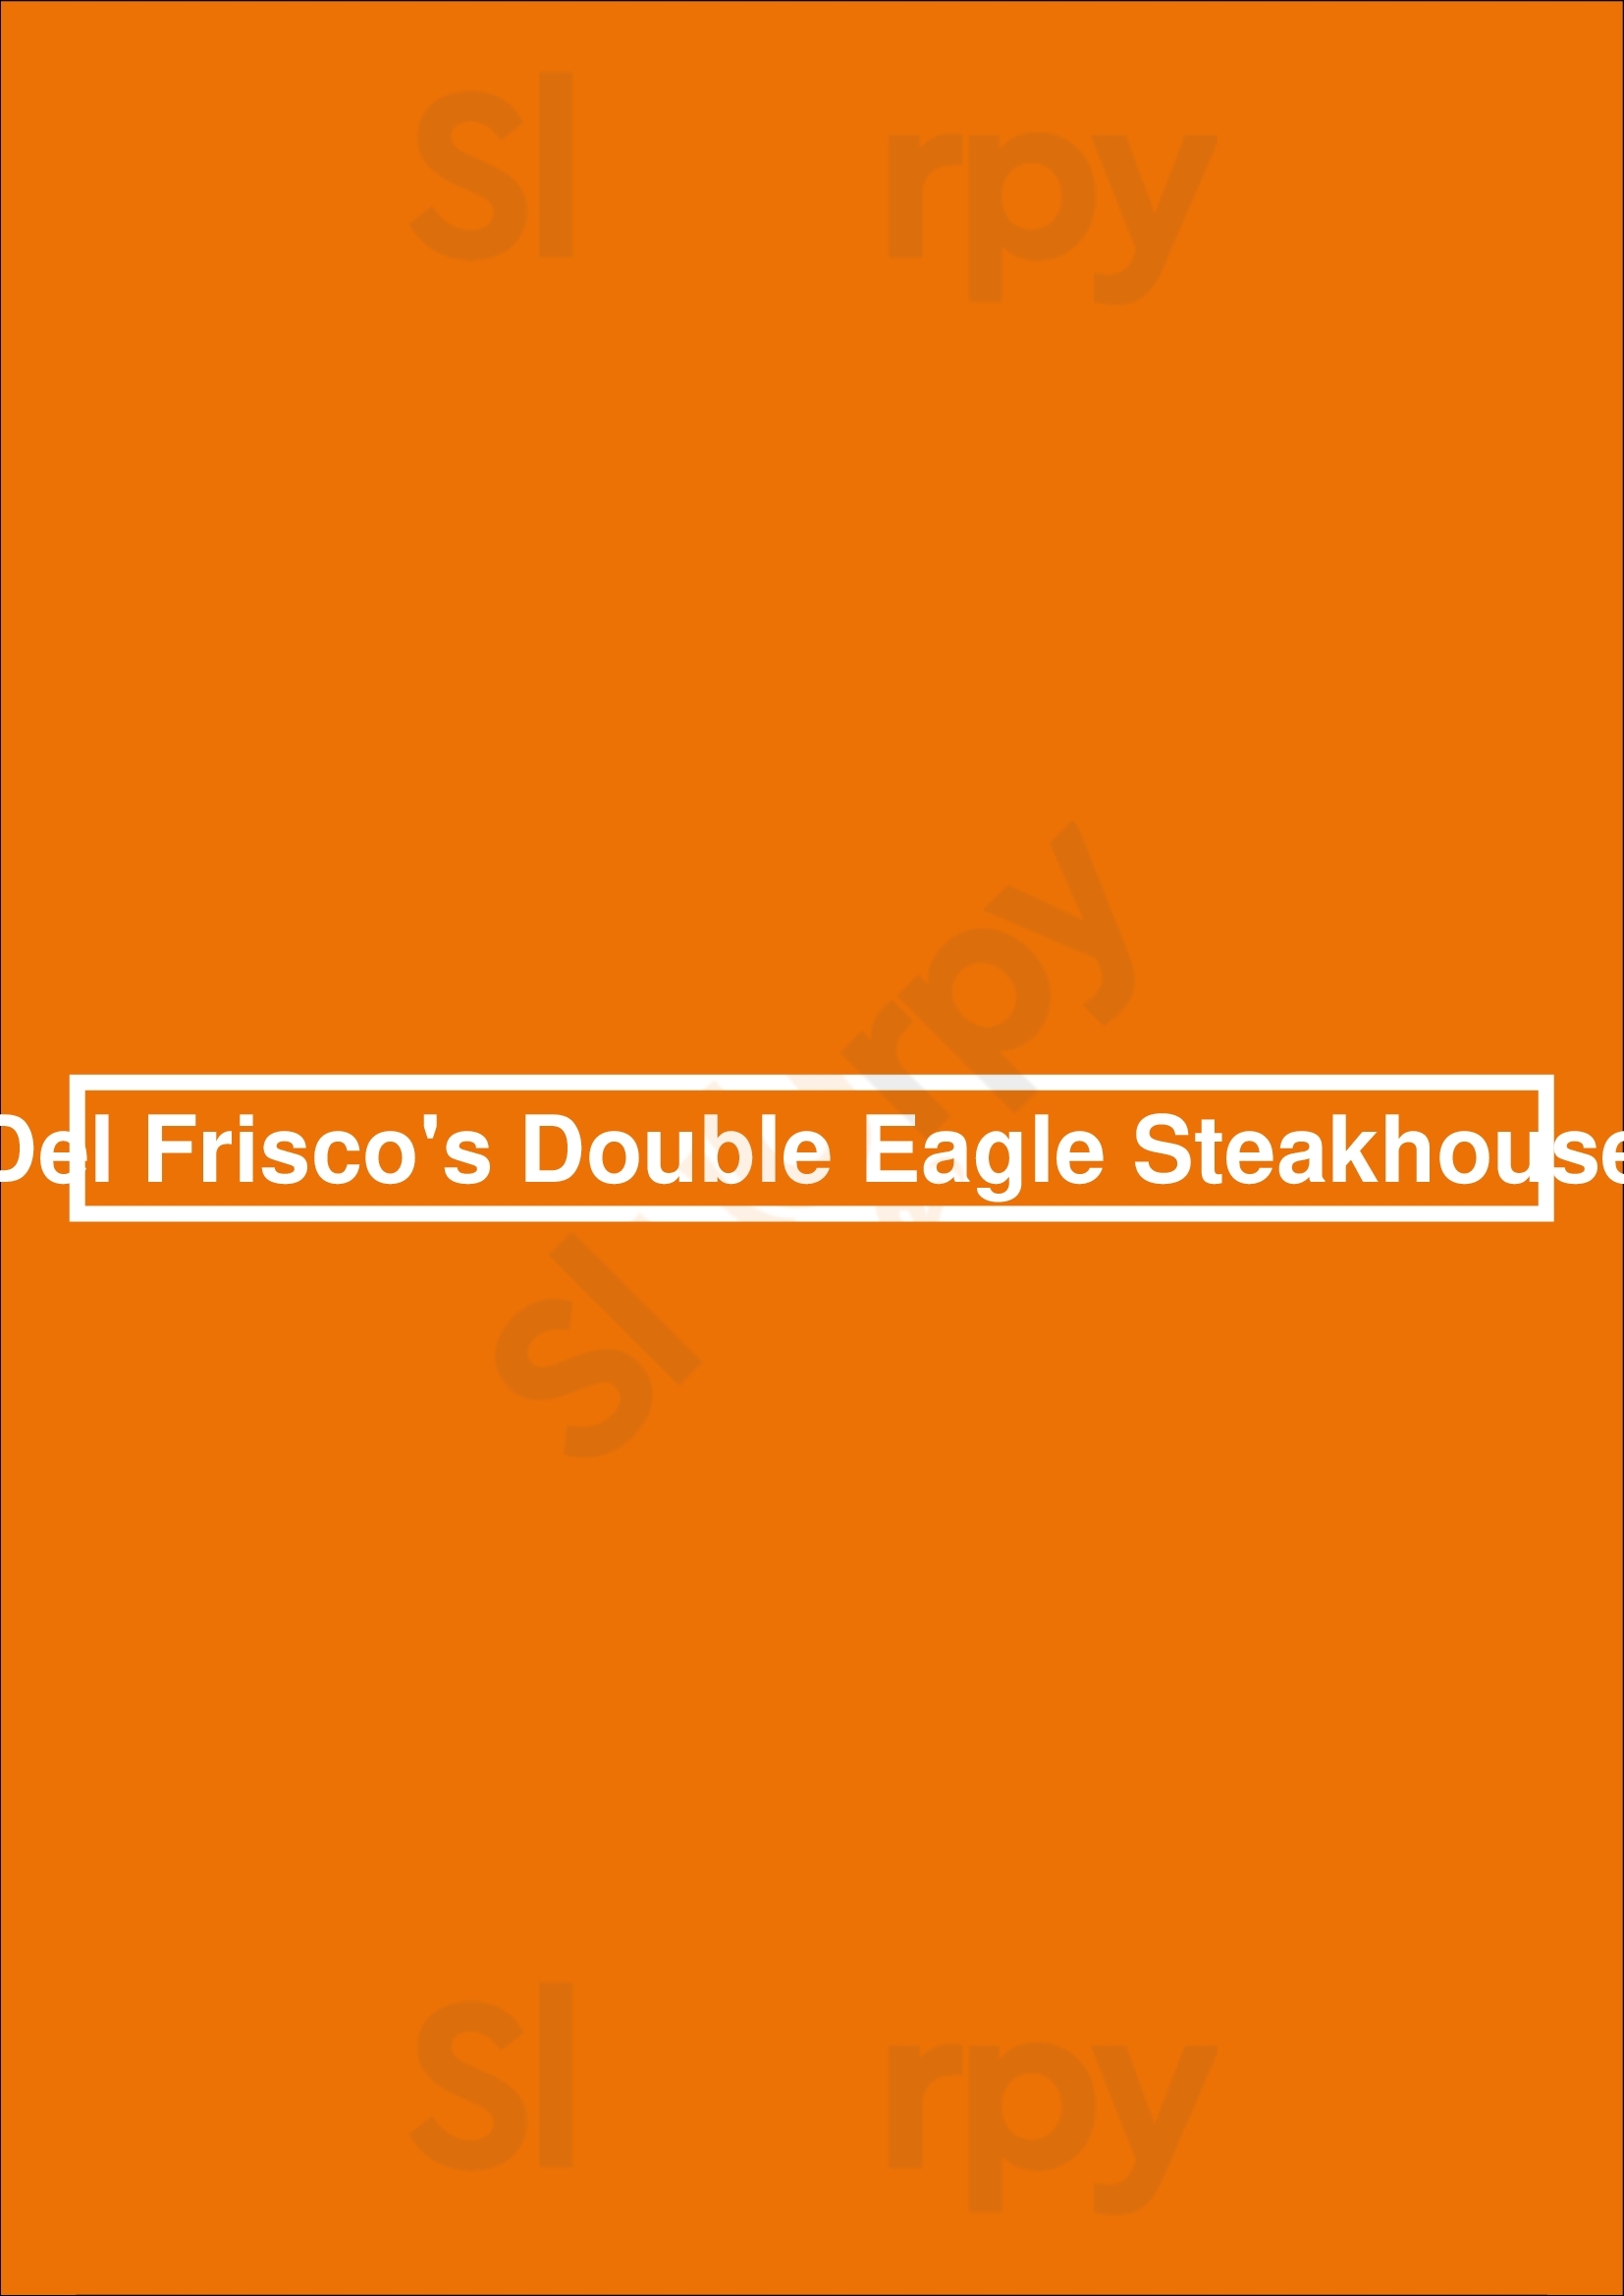 Del Frisco's Double Eagle Steakhouse Las Vegas Menu - 1